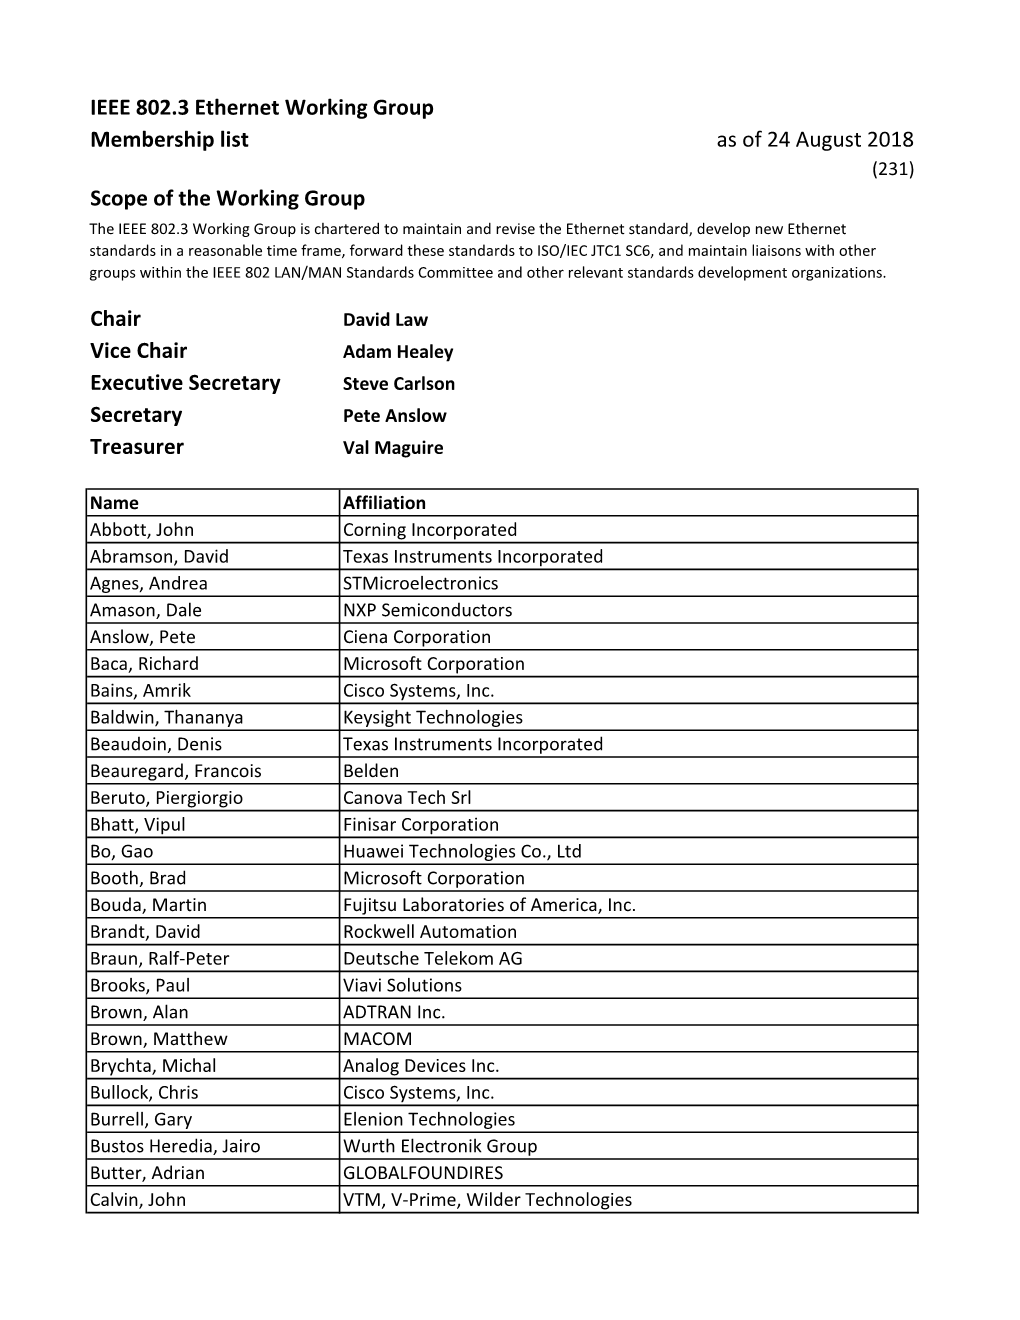 IEEE 802.3 Ethernet Working Group Membership List As of 24 August